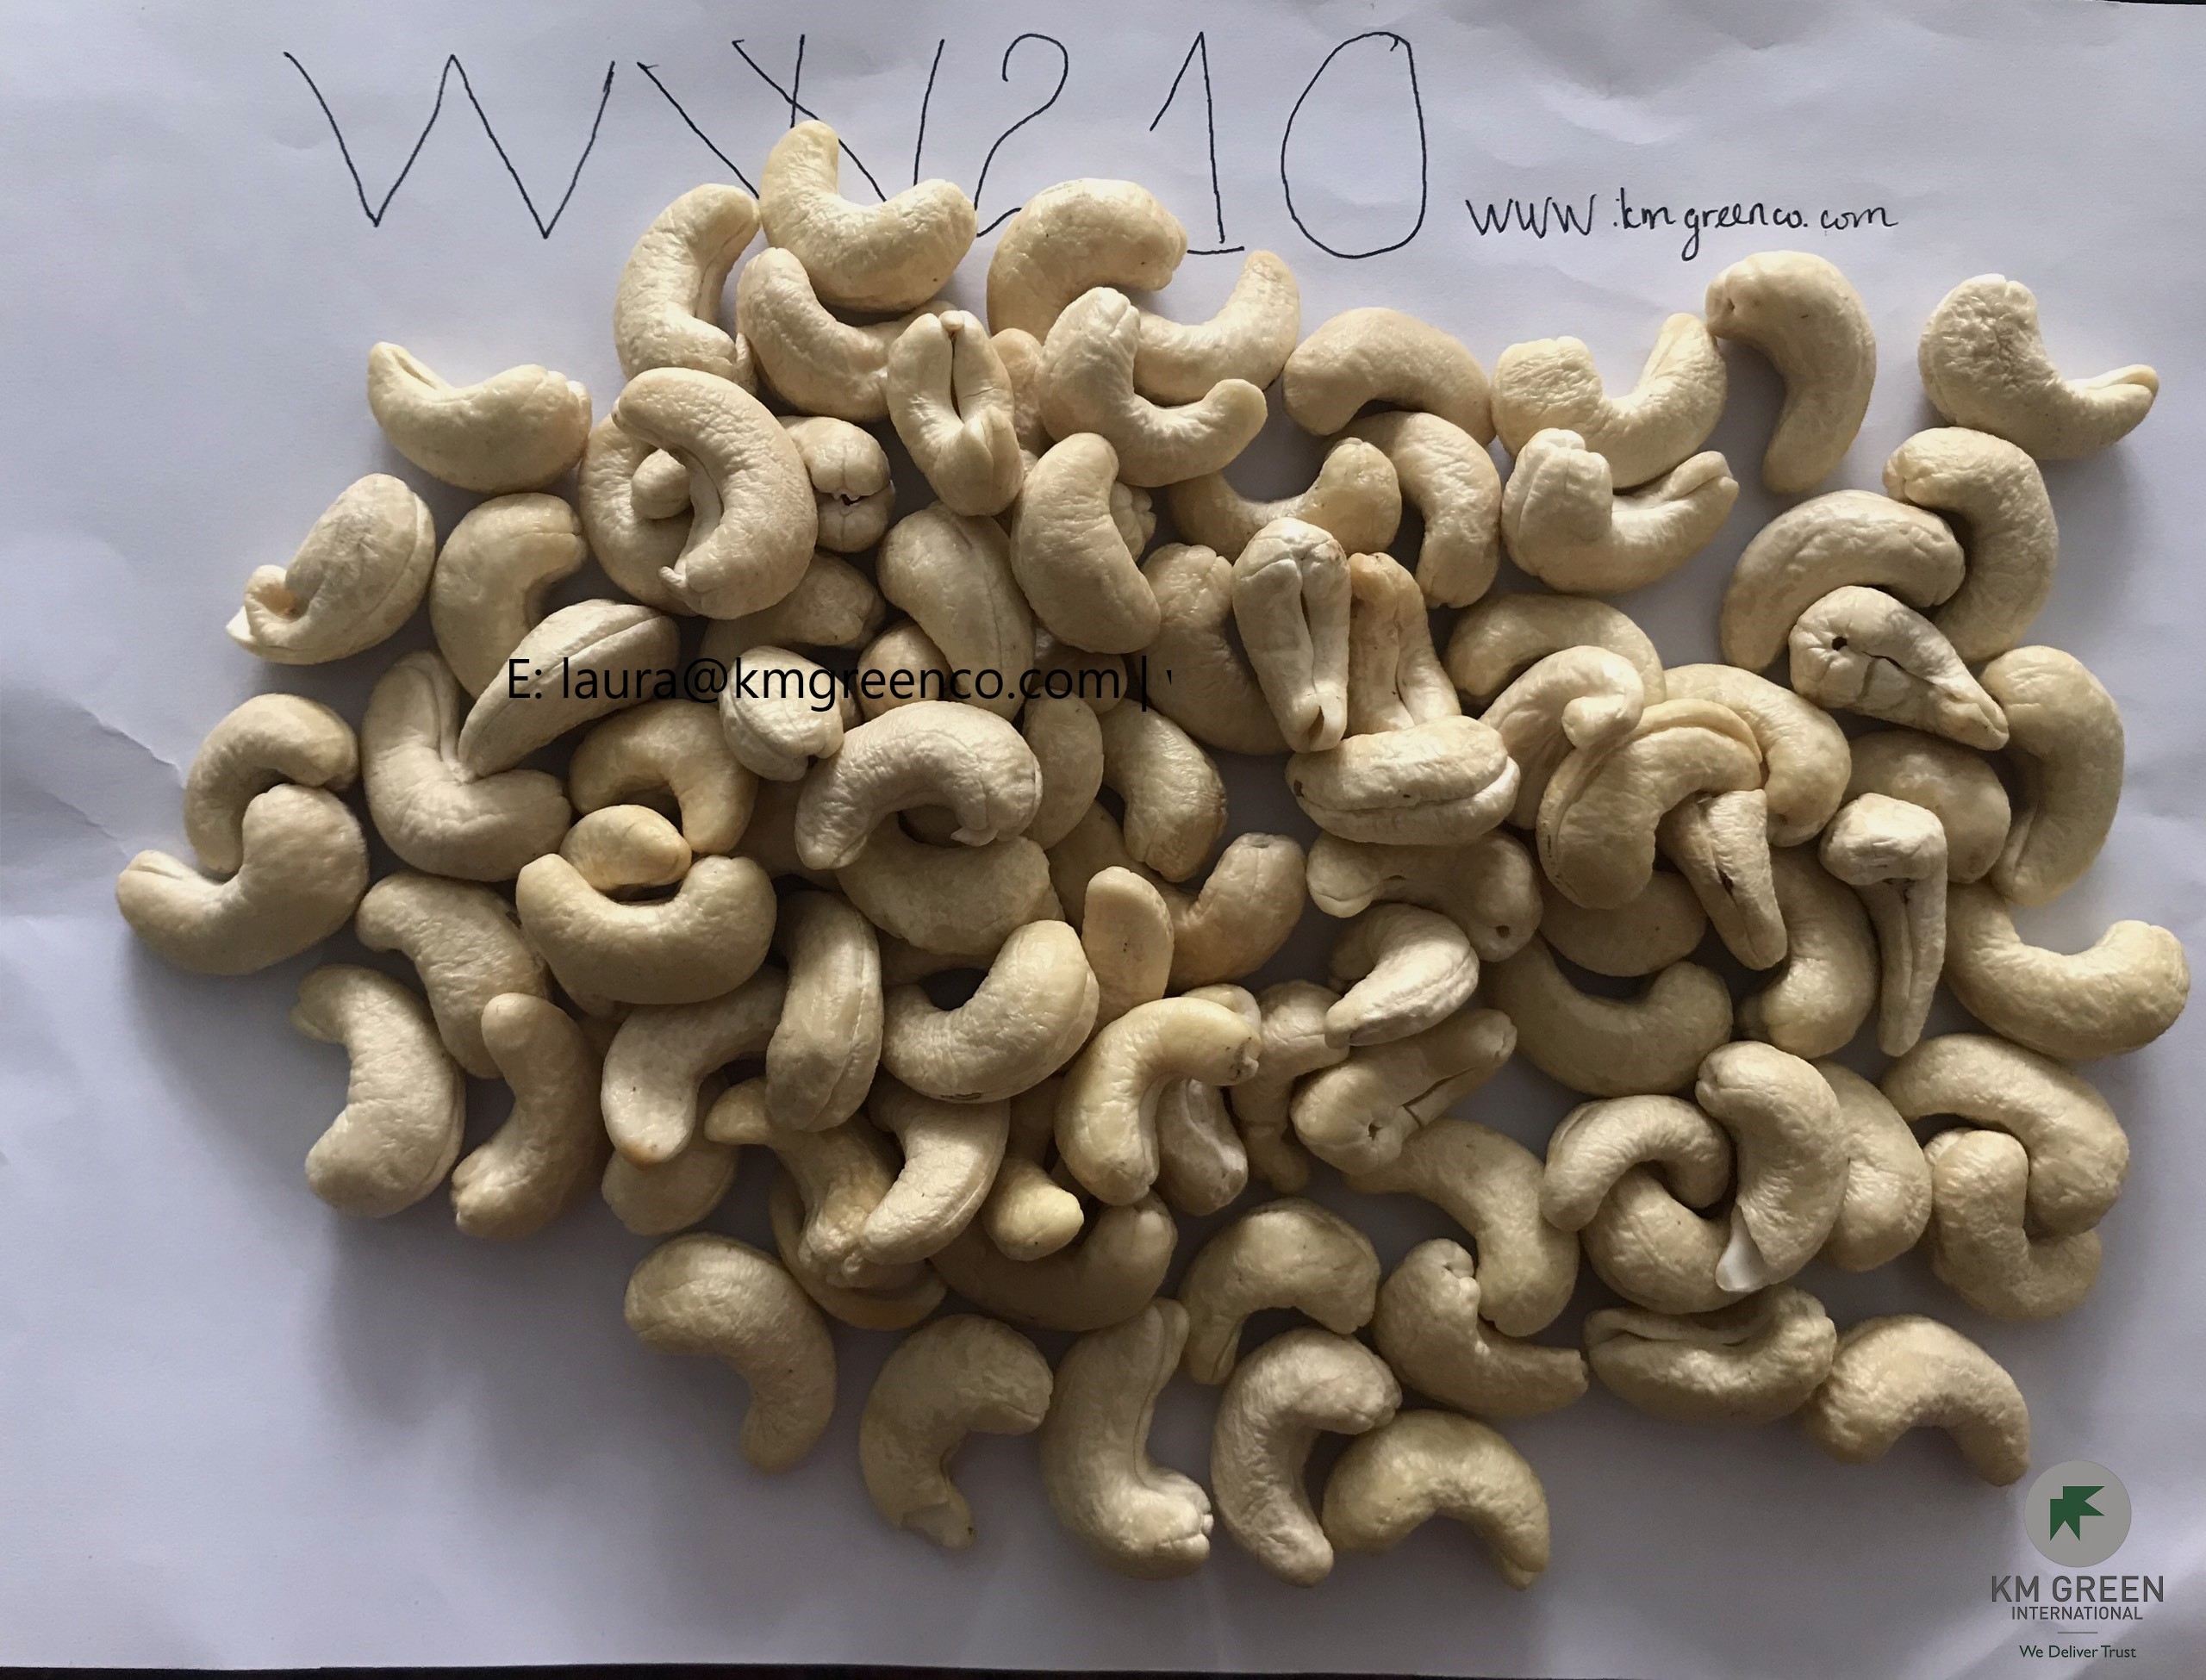 Vietnamese cashew nuts kernels ww210